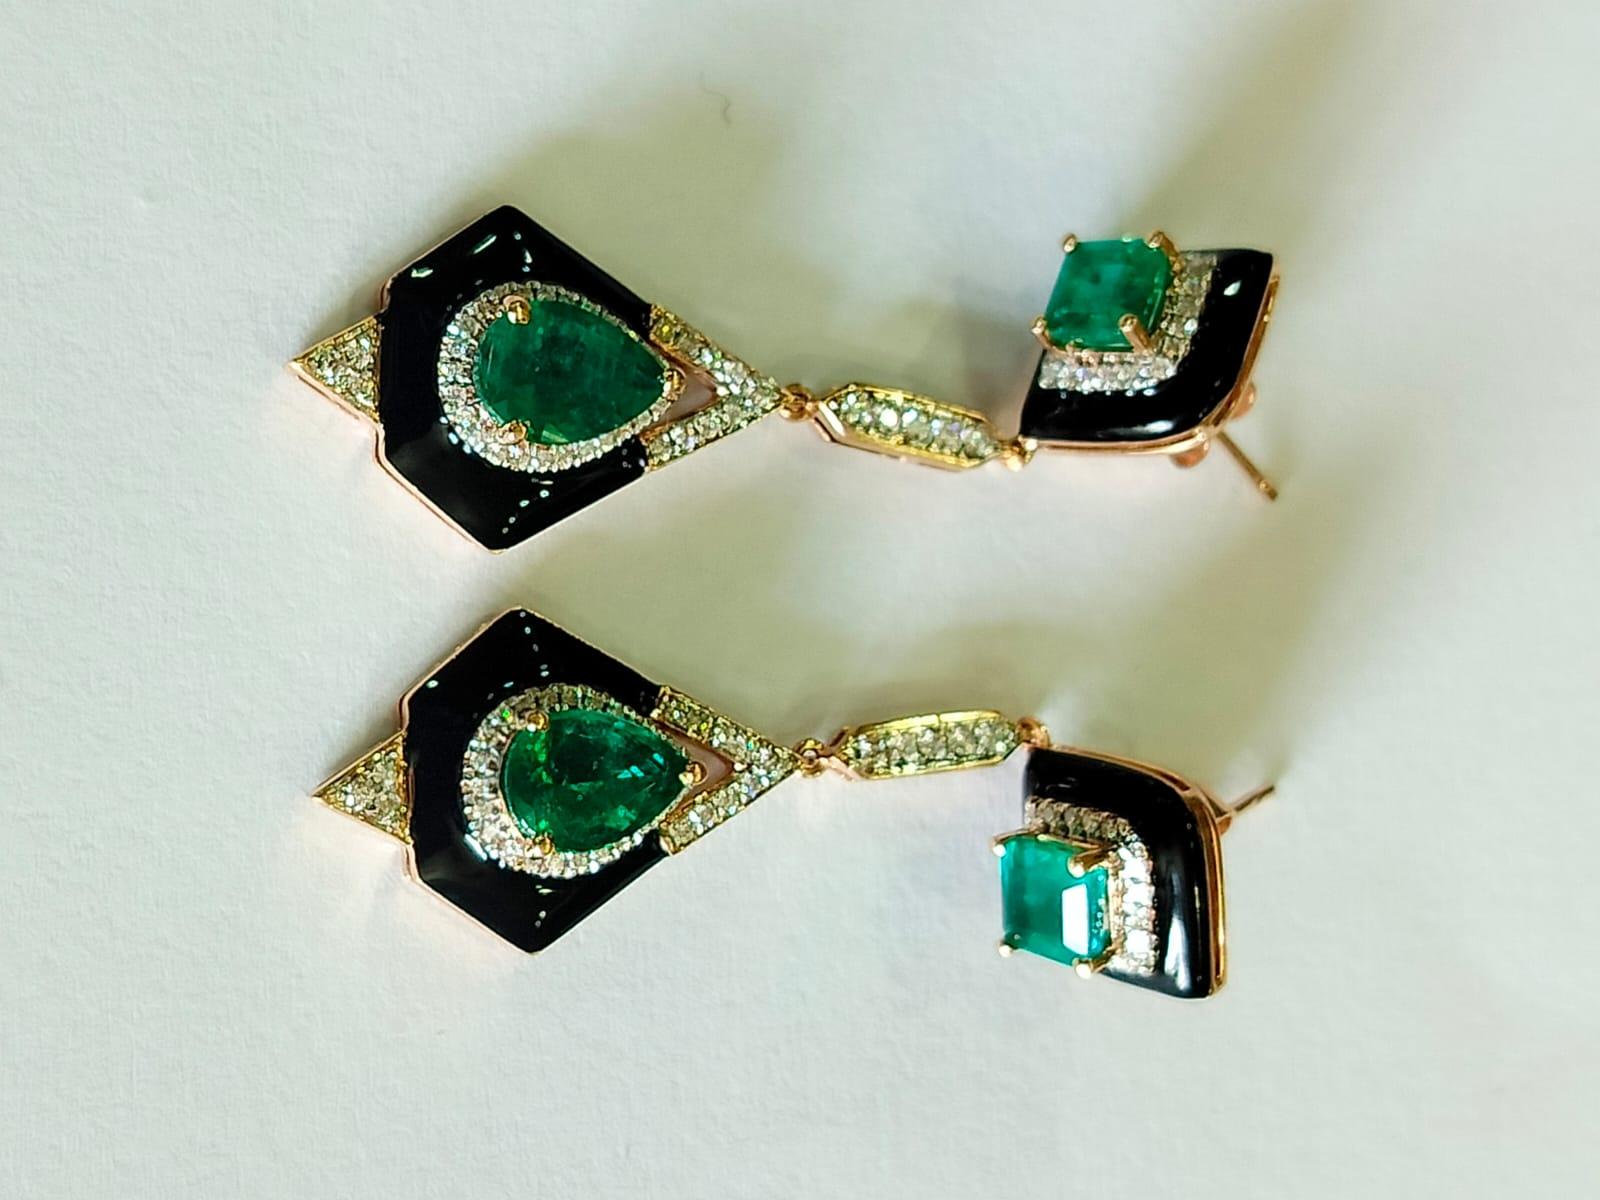 Eine sehr prächtige und schöne, Art Deco-Stil Smaragd Ohrringe in 18K Gold gesetzt. Das Gewicht der Smaragde beträgt 3.54 Karat. Die Smaragde sind völlig natürlich, ohne jegliche Behandlung und sind sambischen Ursprungs. Das Gewicht der Diamanten